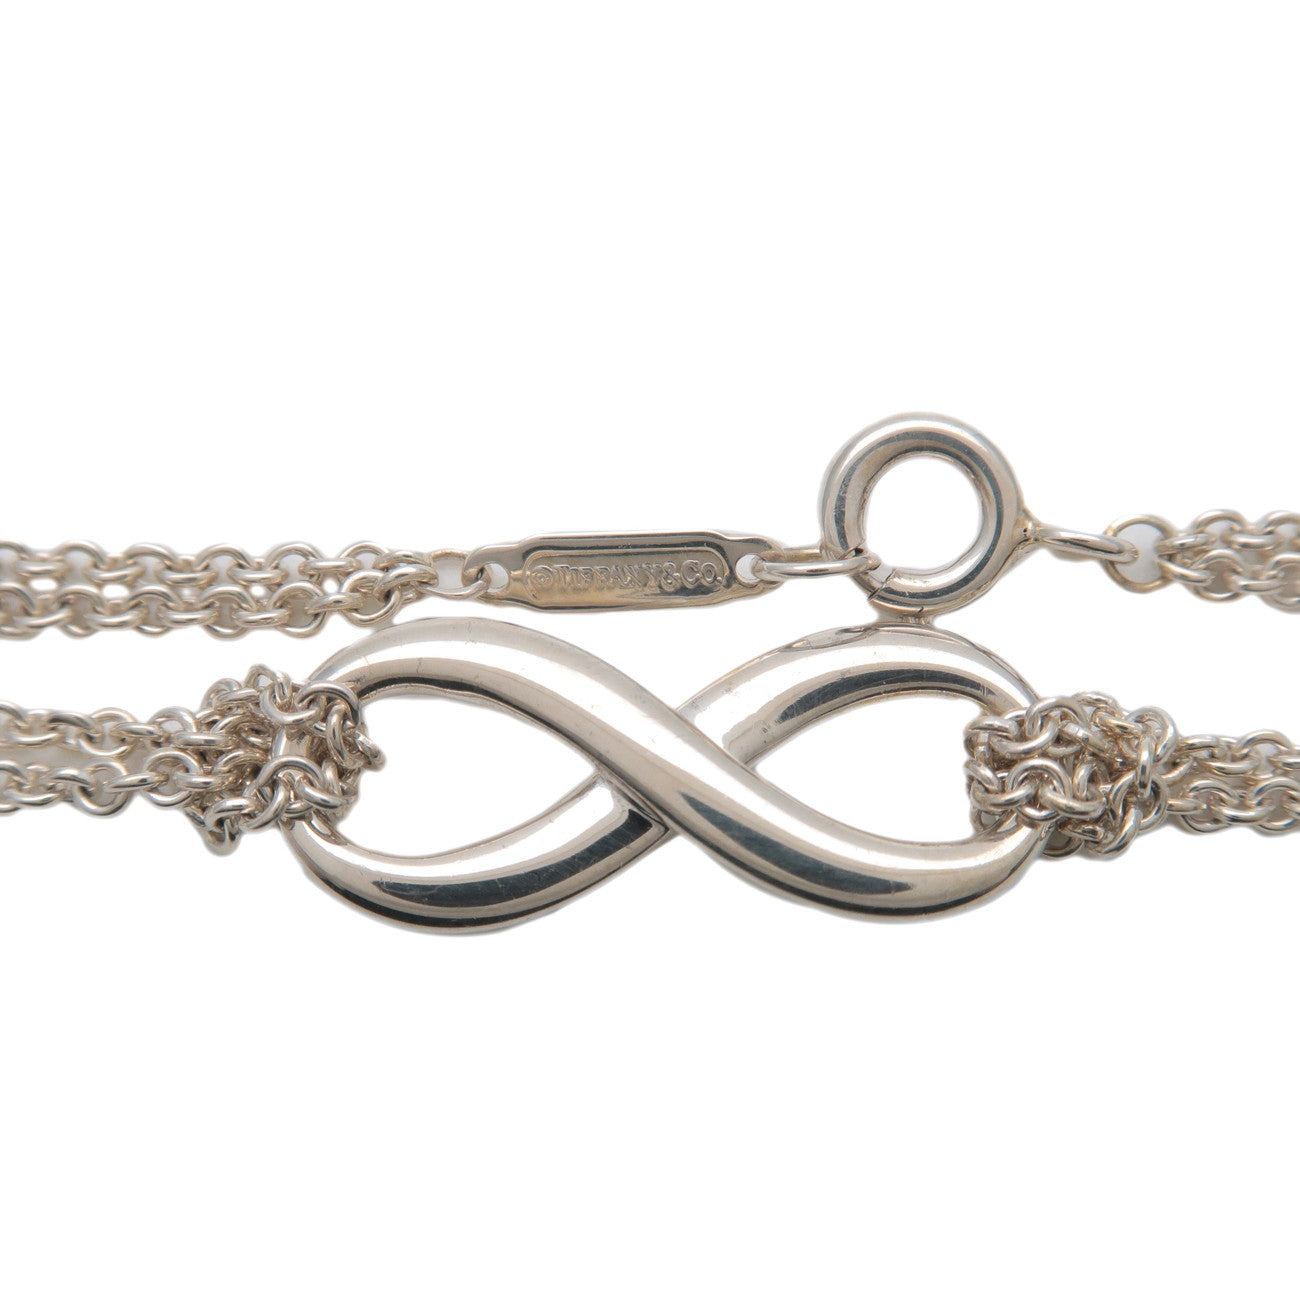 Tiffany&Co. Infinity Bracelet SV925 Silver